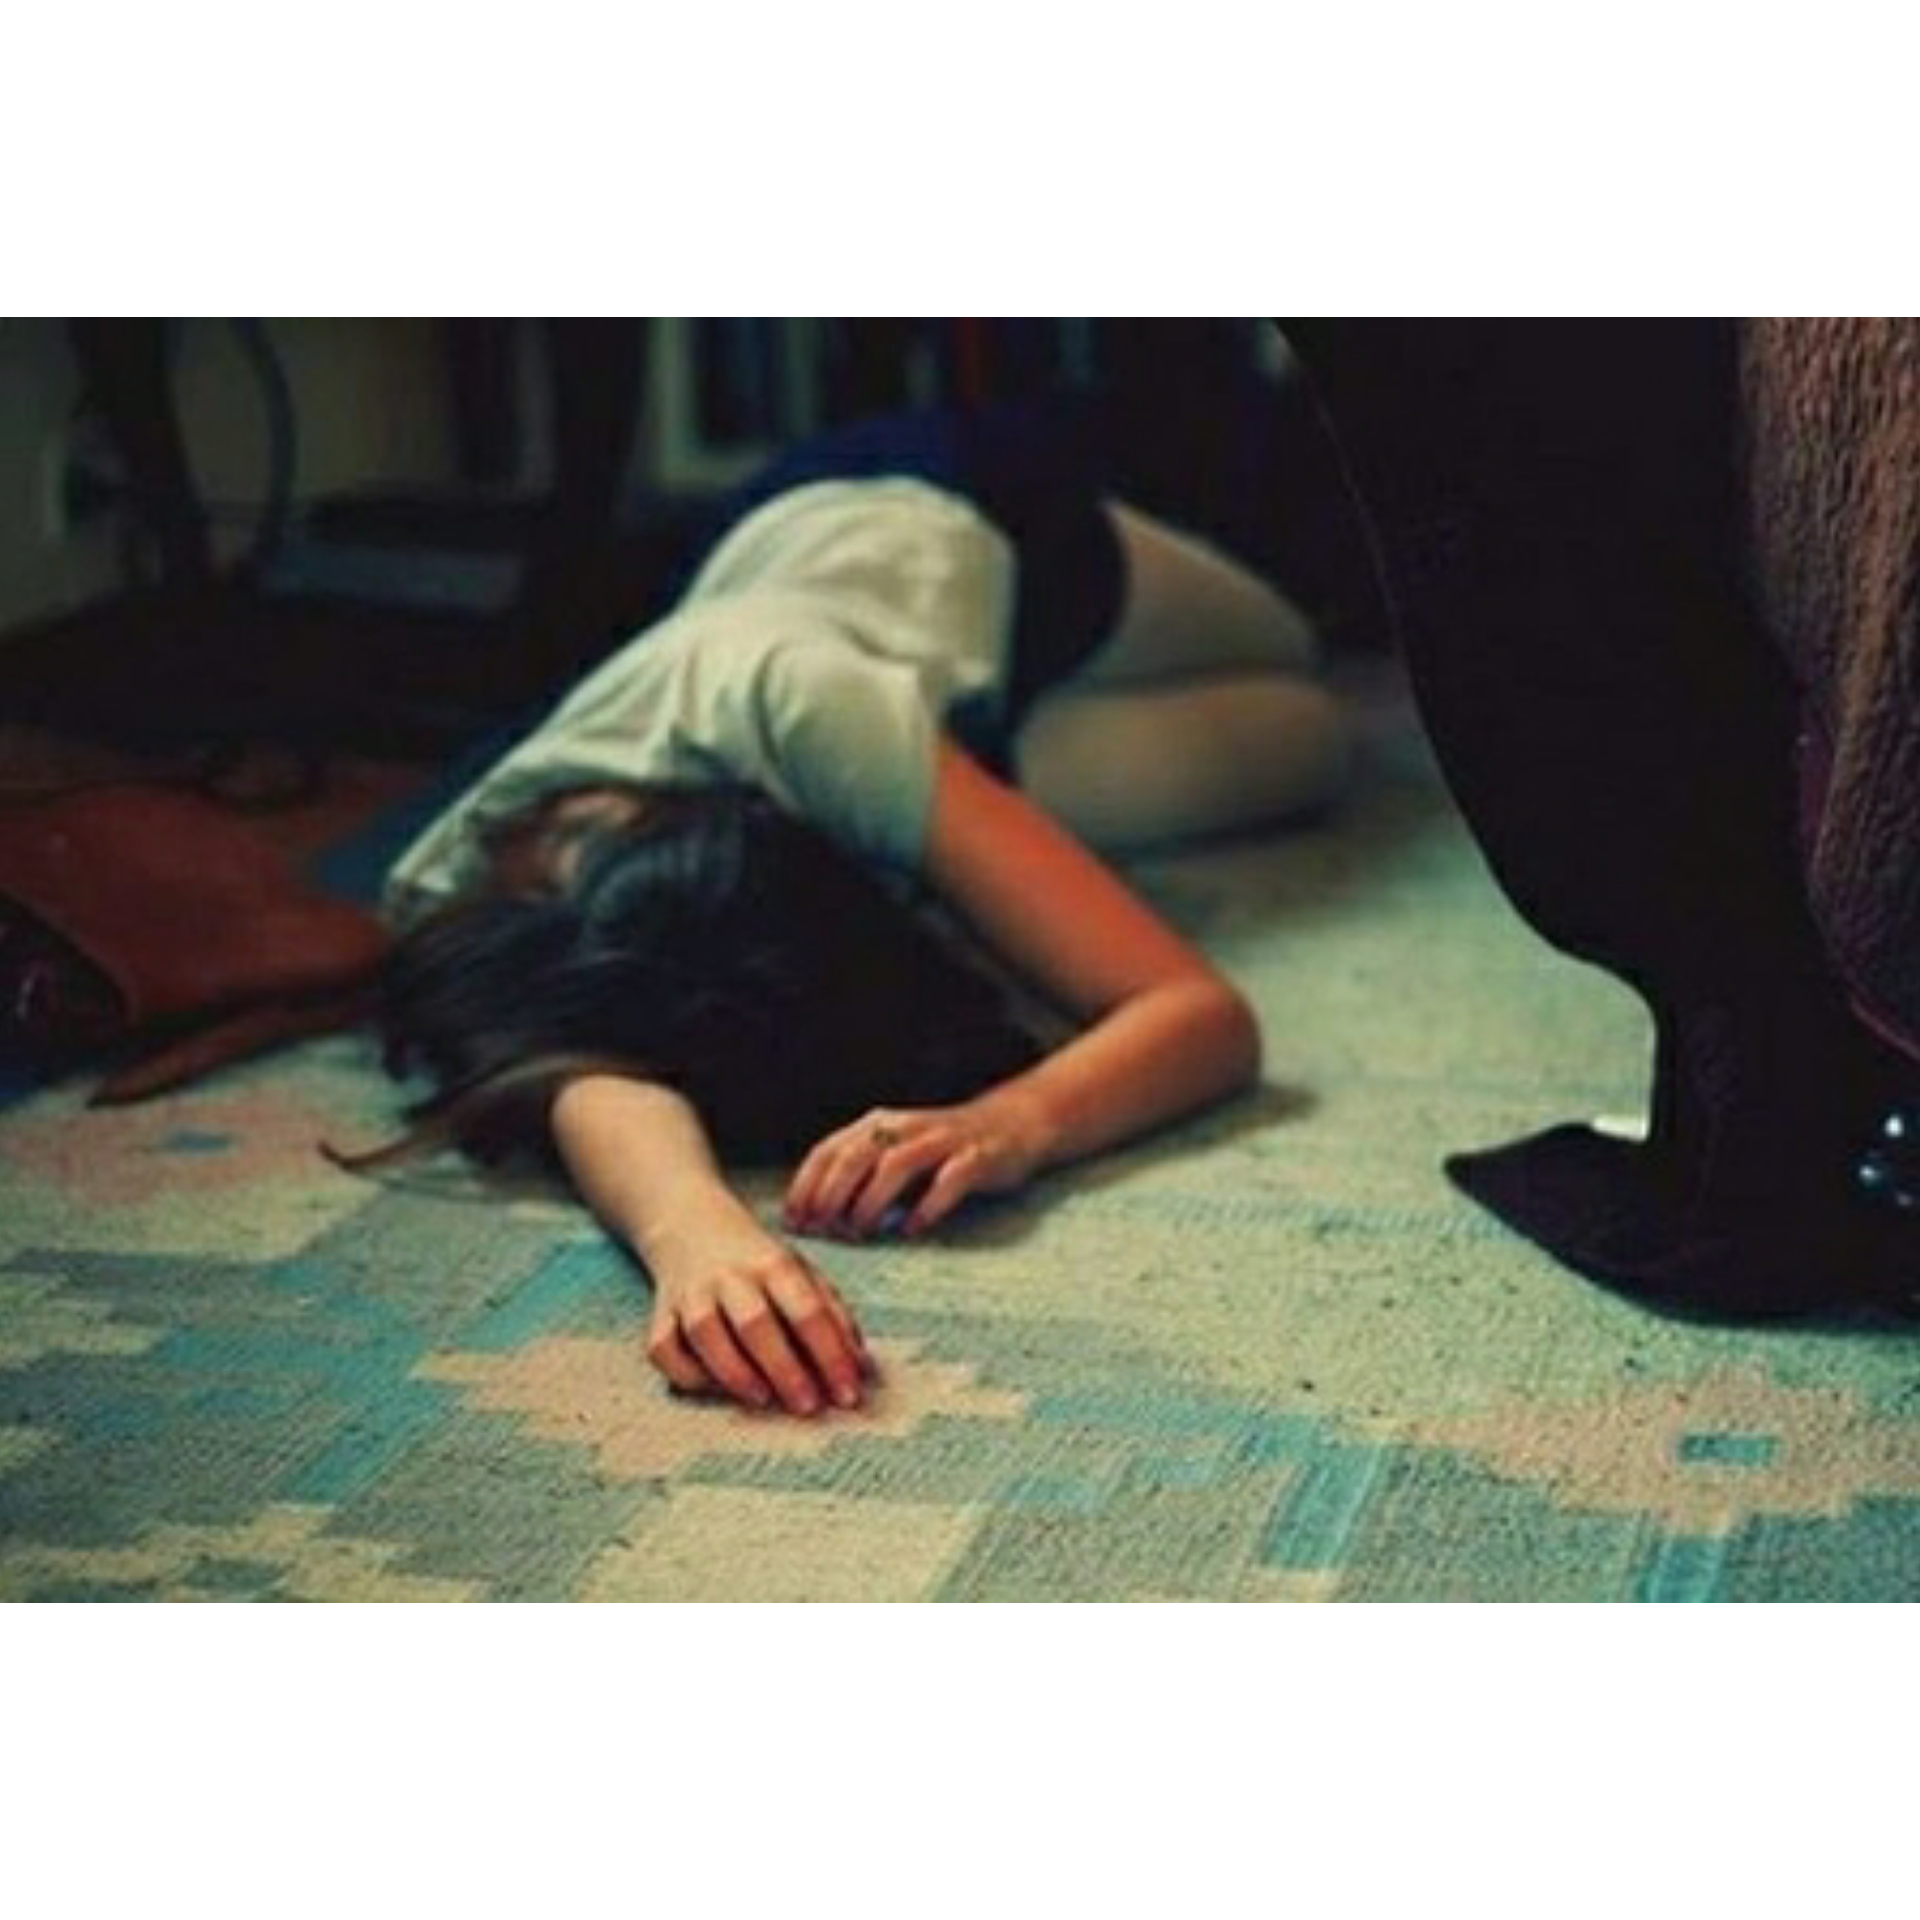 Без сознания 18. Женщина валяется на полу. Женщина без сознания на полу.